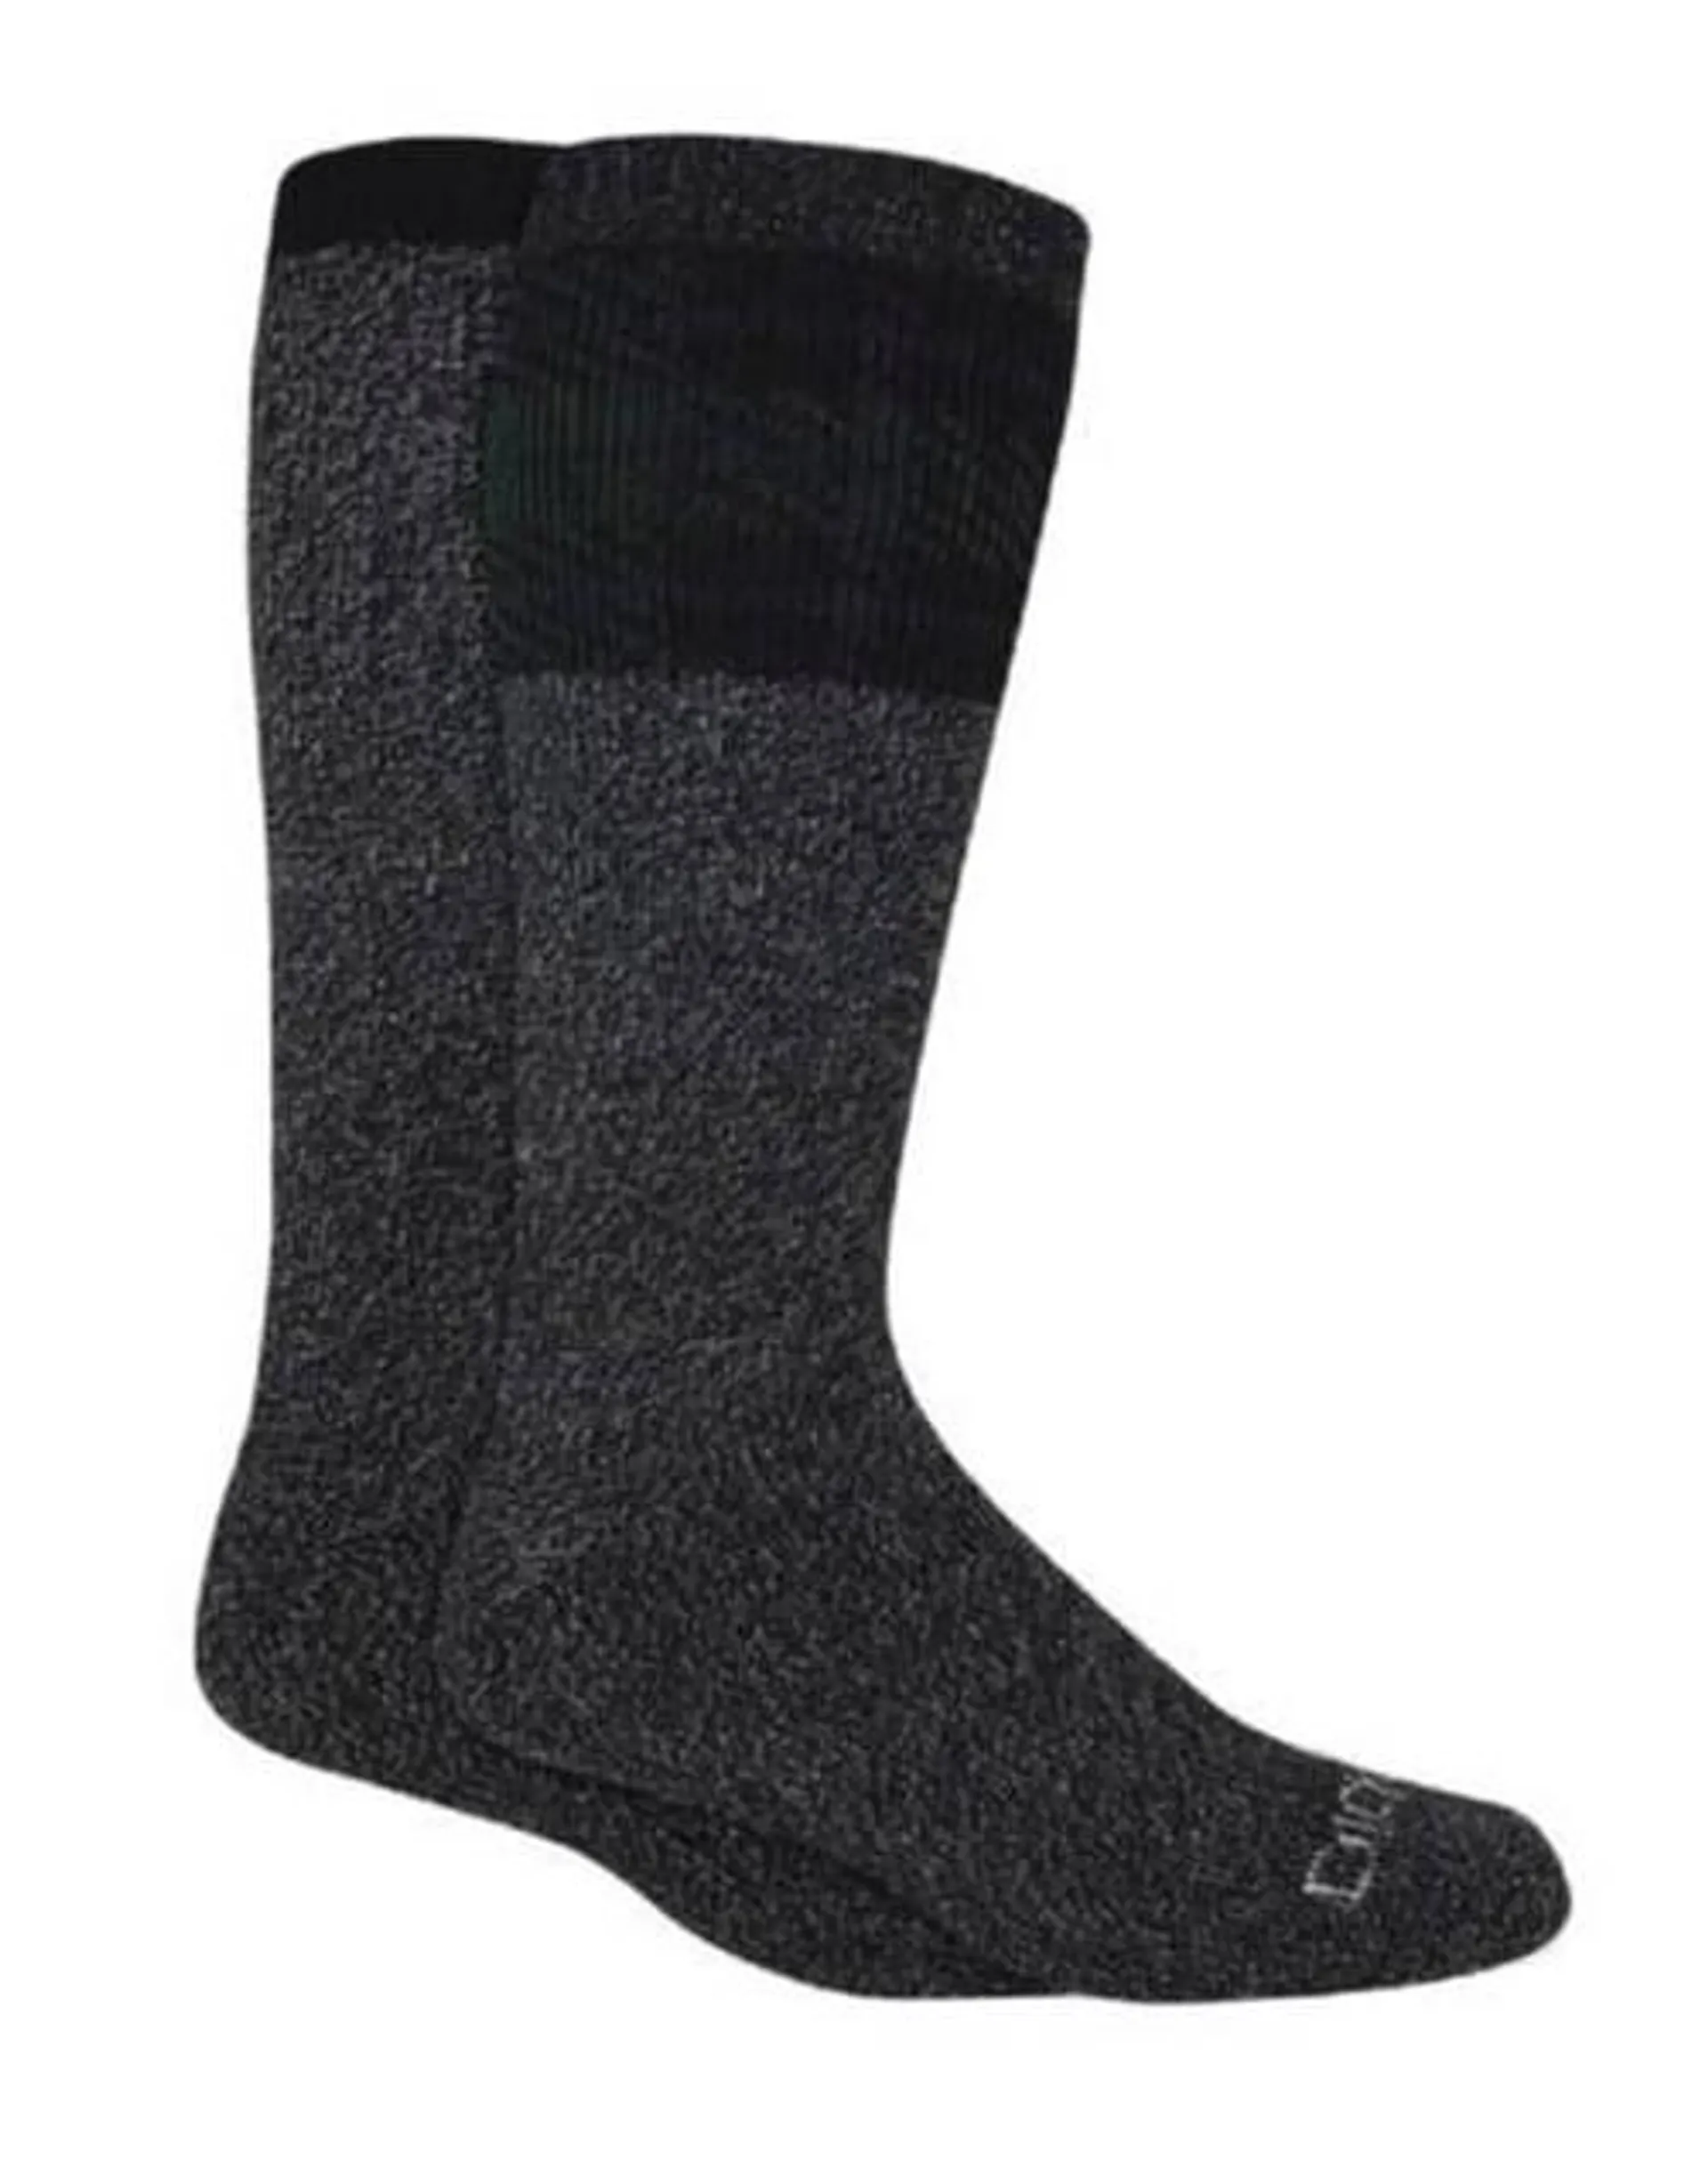 Dickies Men's Black Charcoal Brushed Thermal Crew Socks - Assorted, 2 Pk